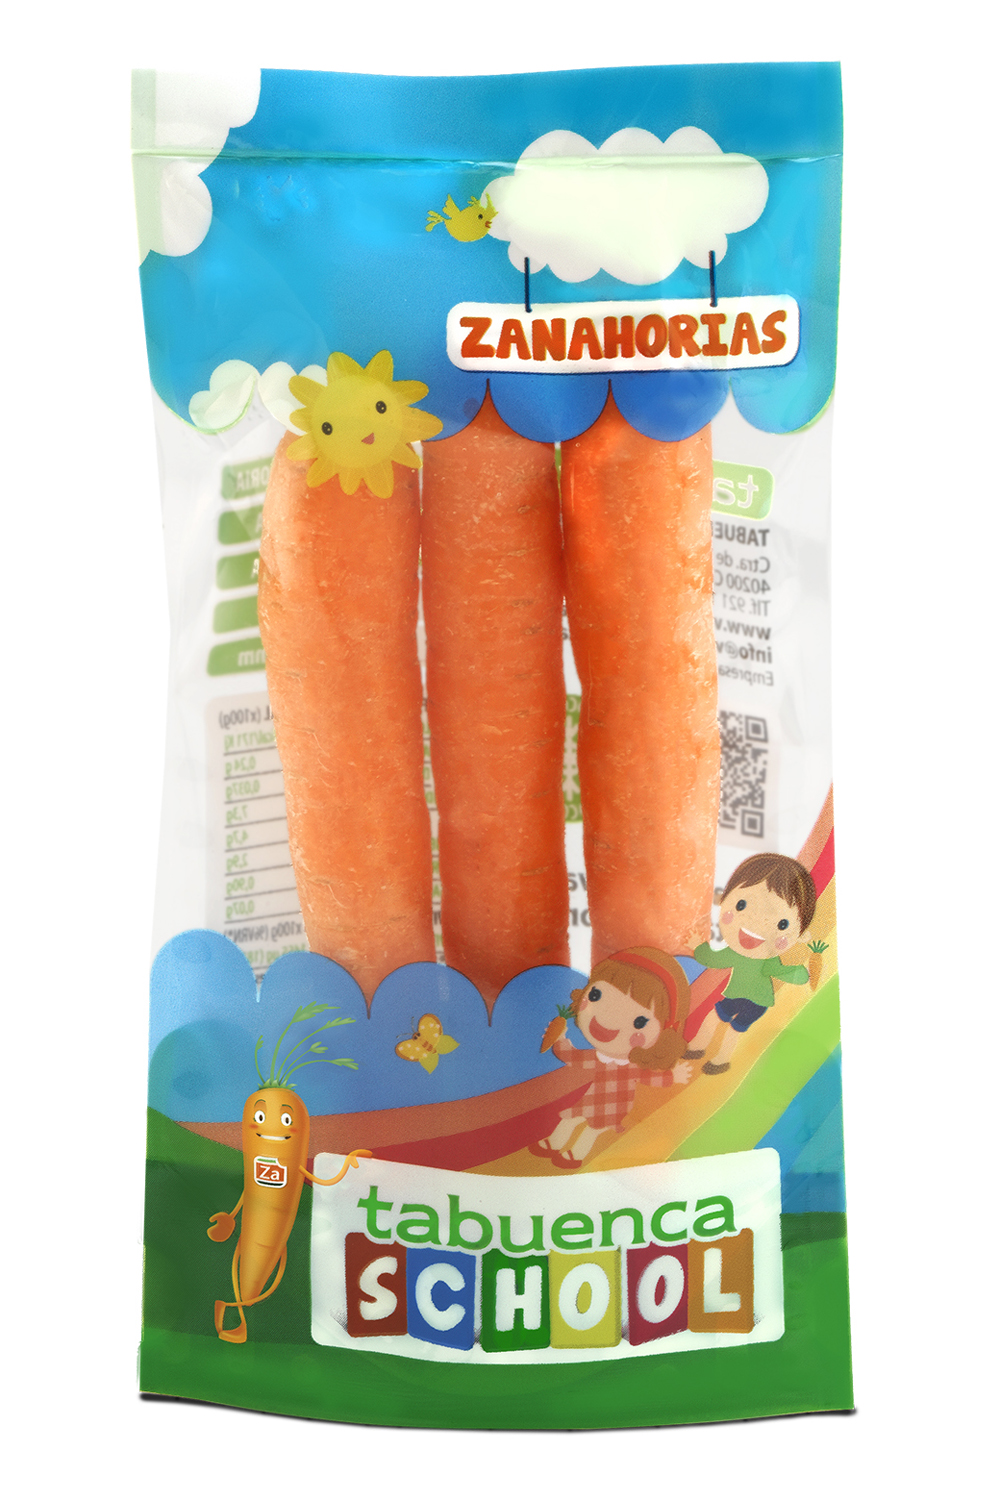 La empresa Tabuenca comienza con éxito la comercialización de su nuevo pack de zanahorias dulces